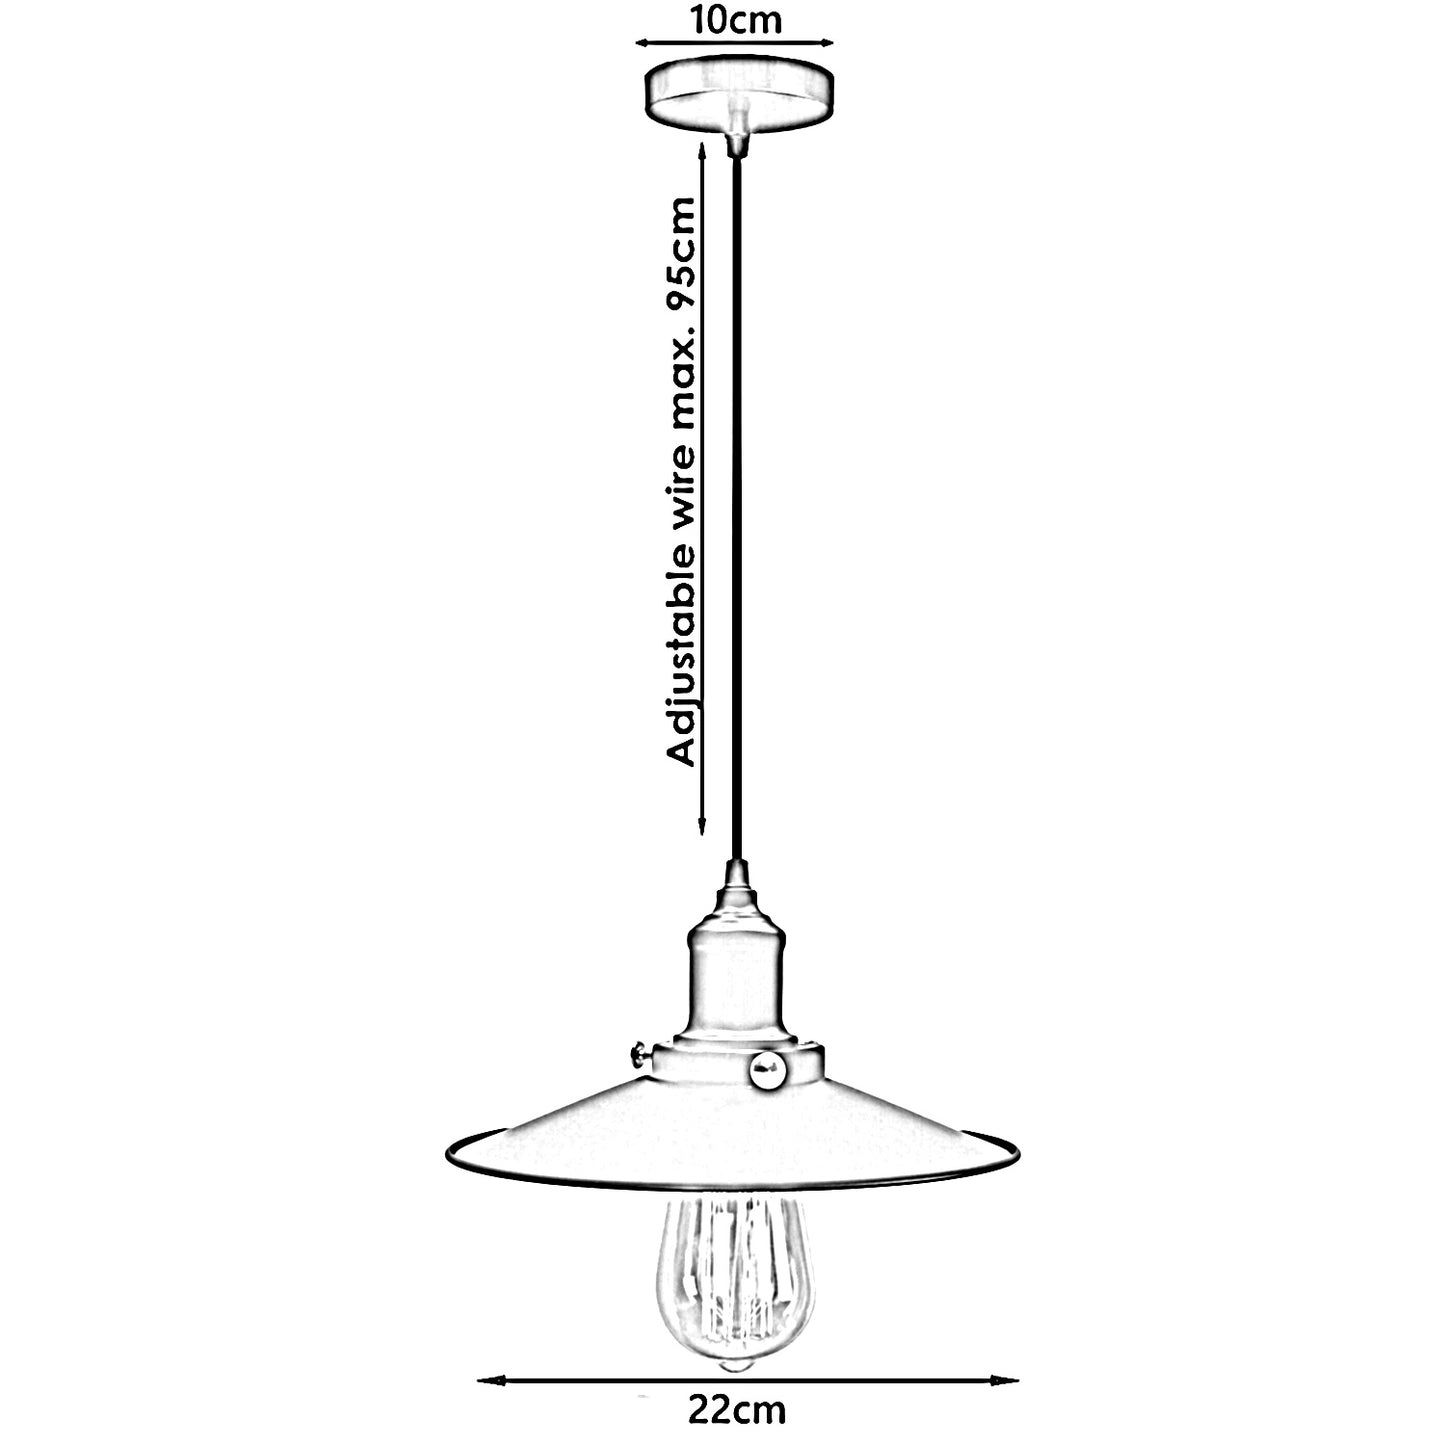 Satin Nickel-Vintage Deckenlampe Leuchte Pendelleuchte Hängelampe Retro Industrie Design